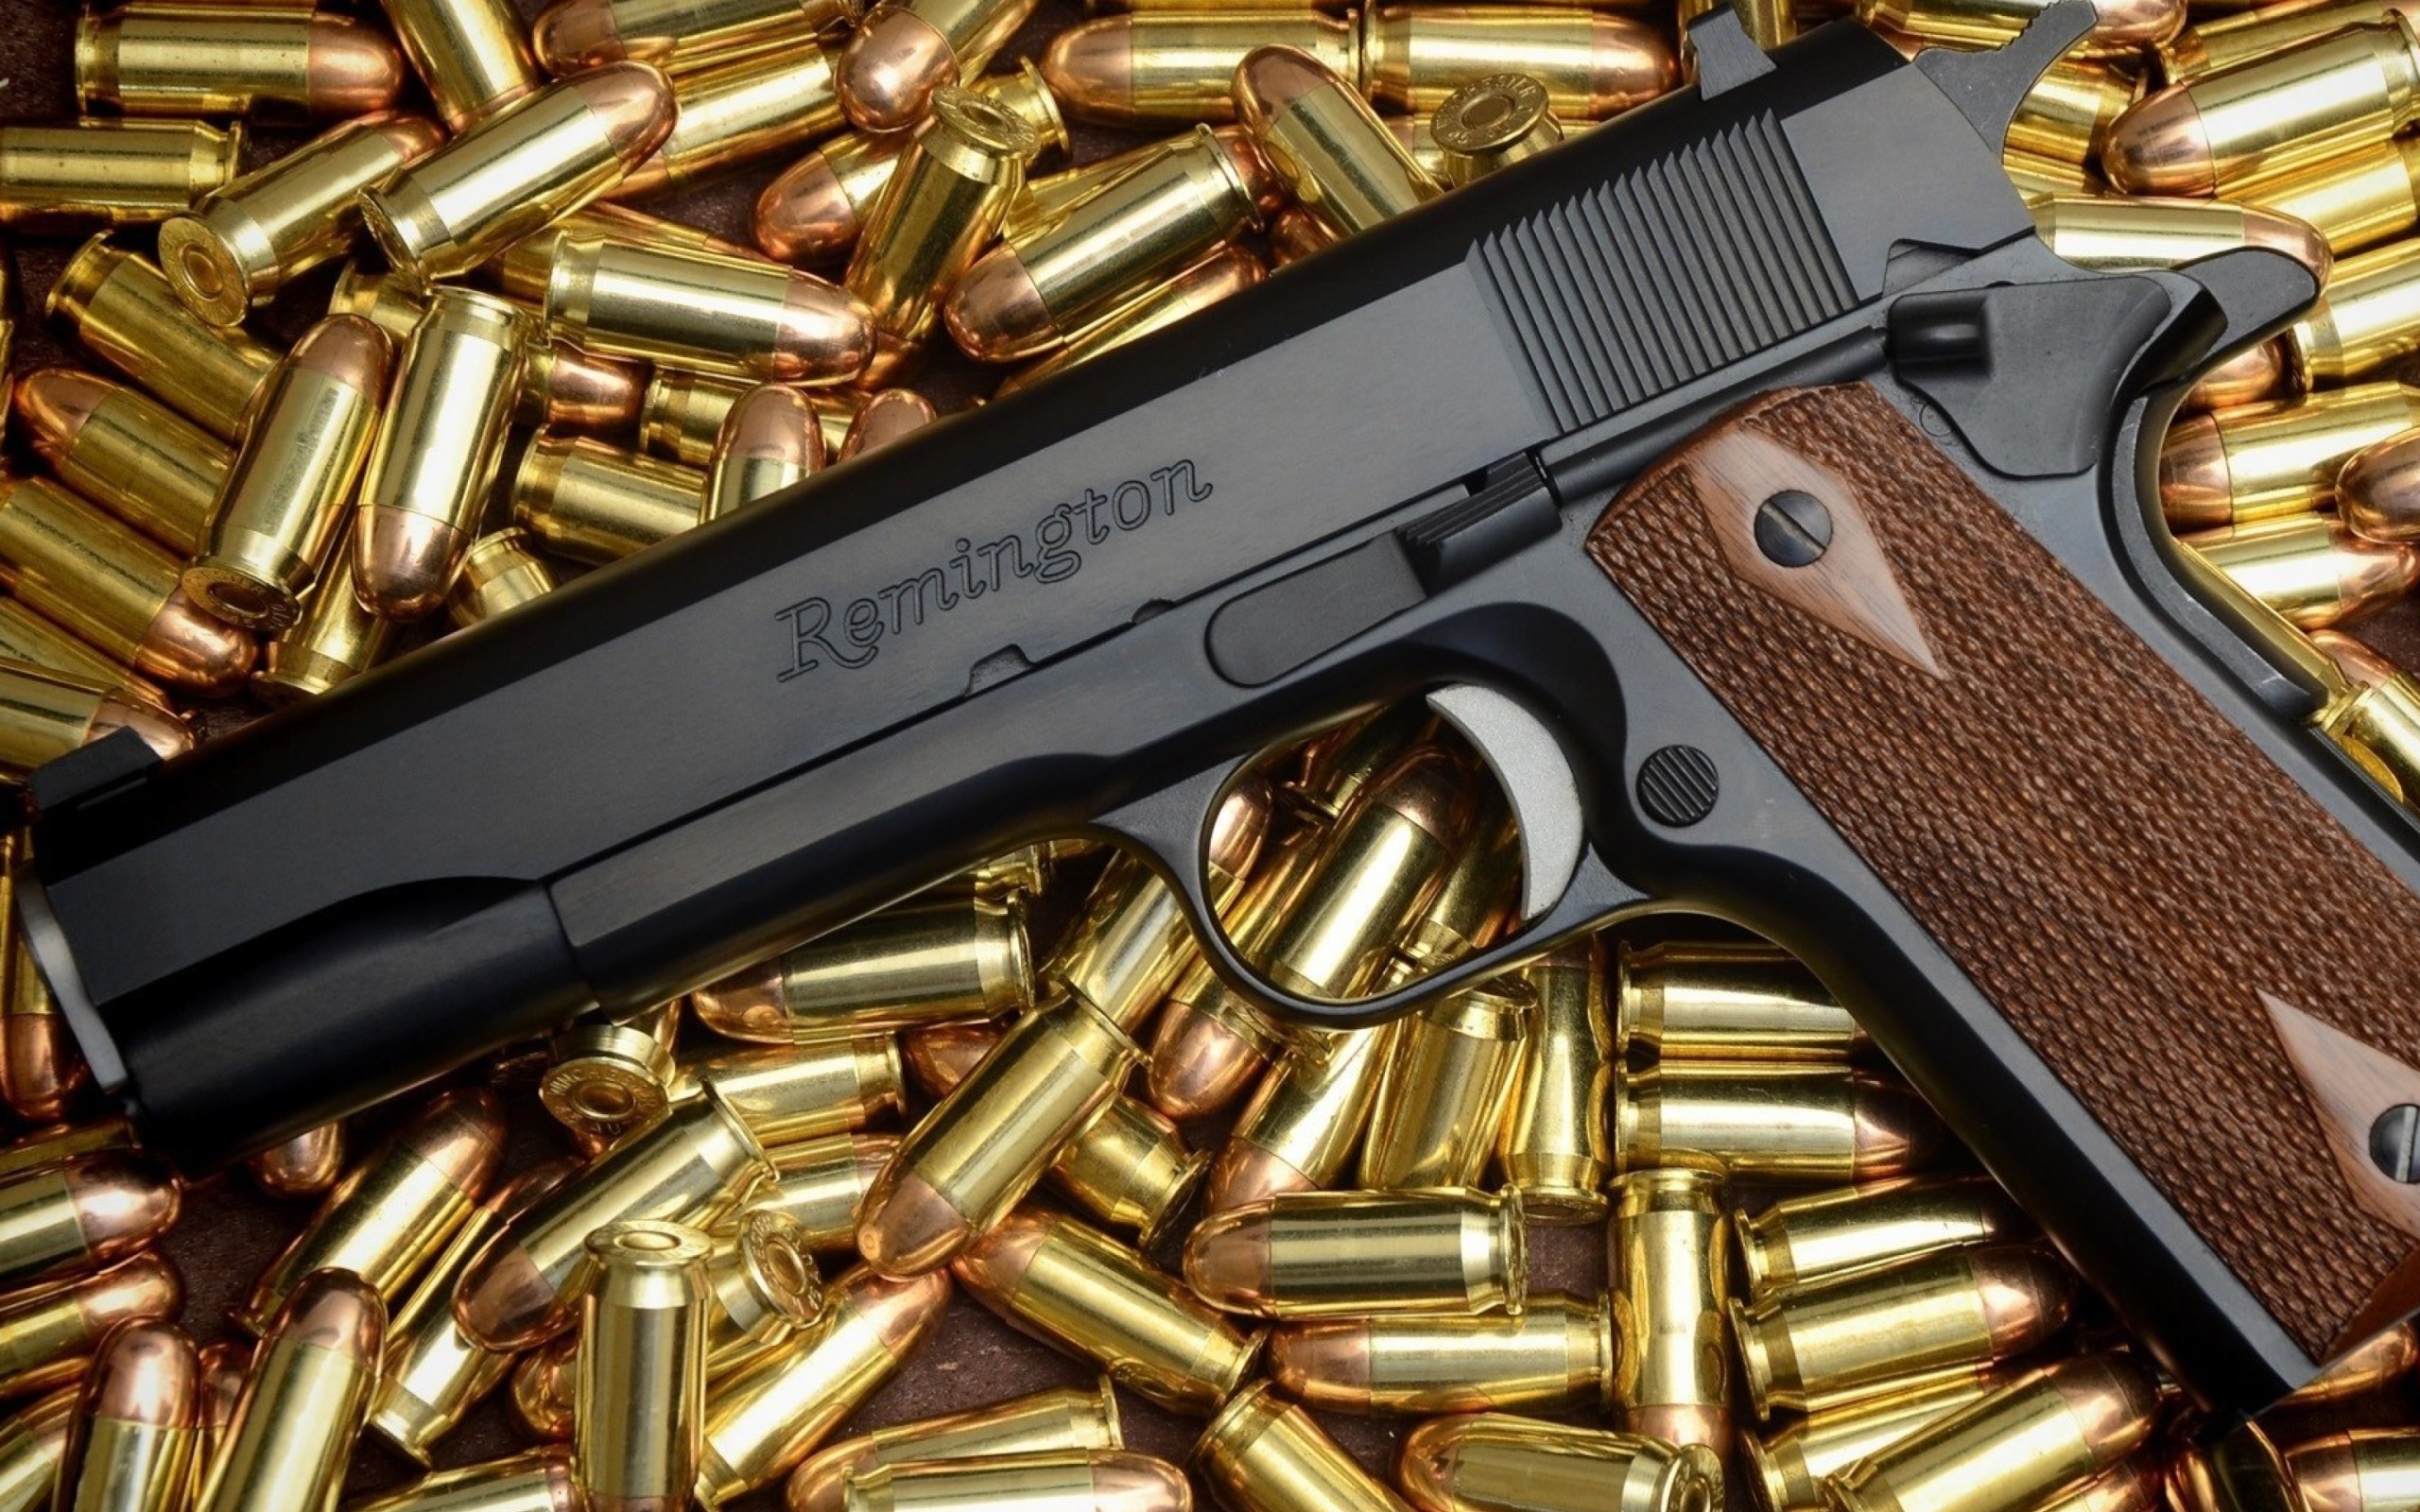 Pistol Remington wallpaper 2560x1600